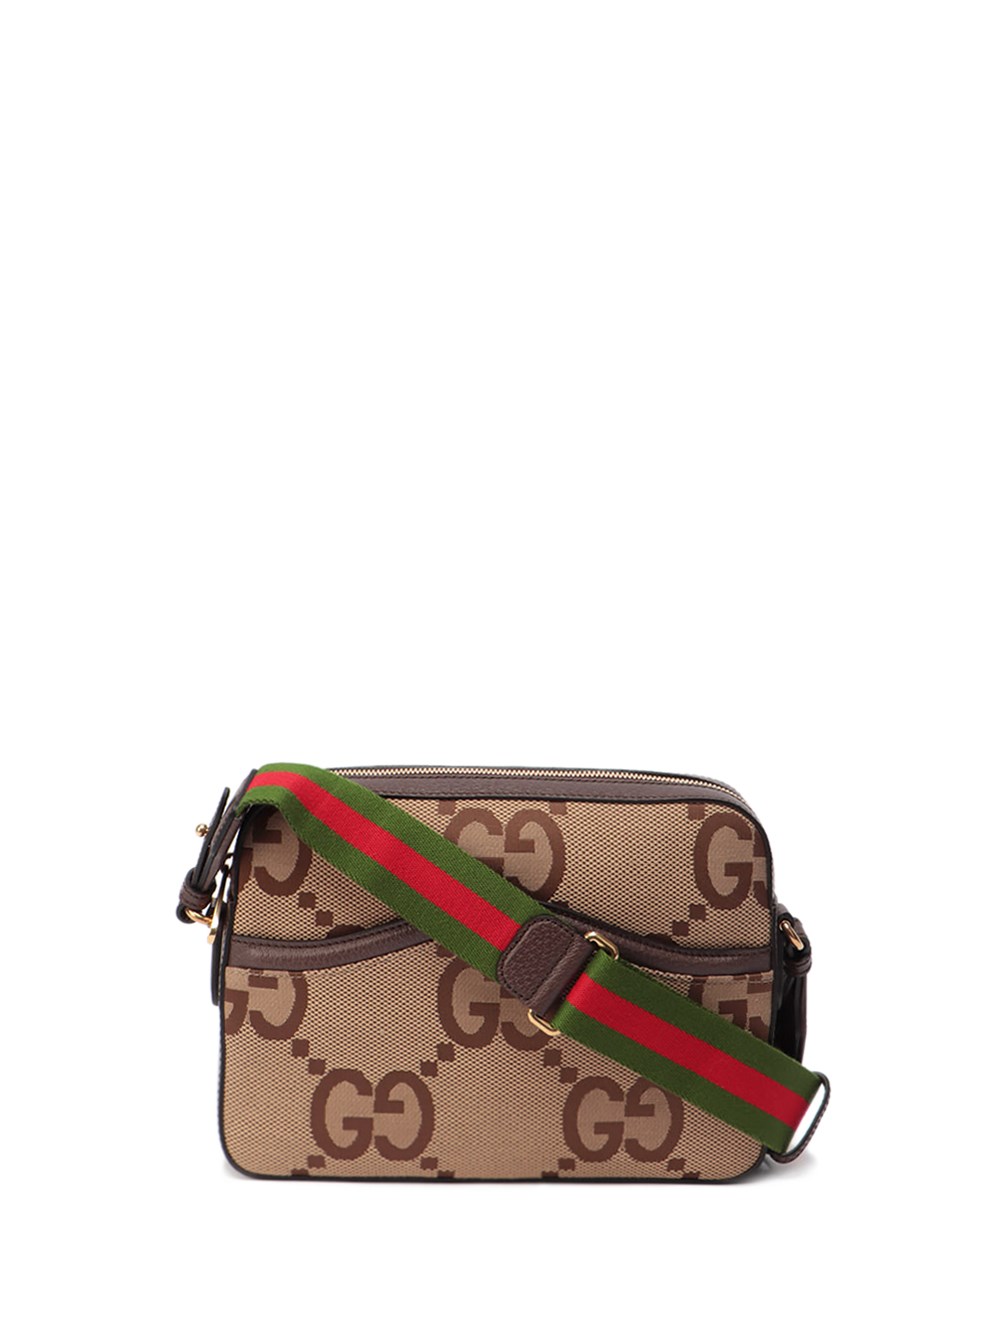 Jumbo GG messenger bag, Gucci